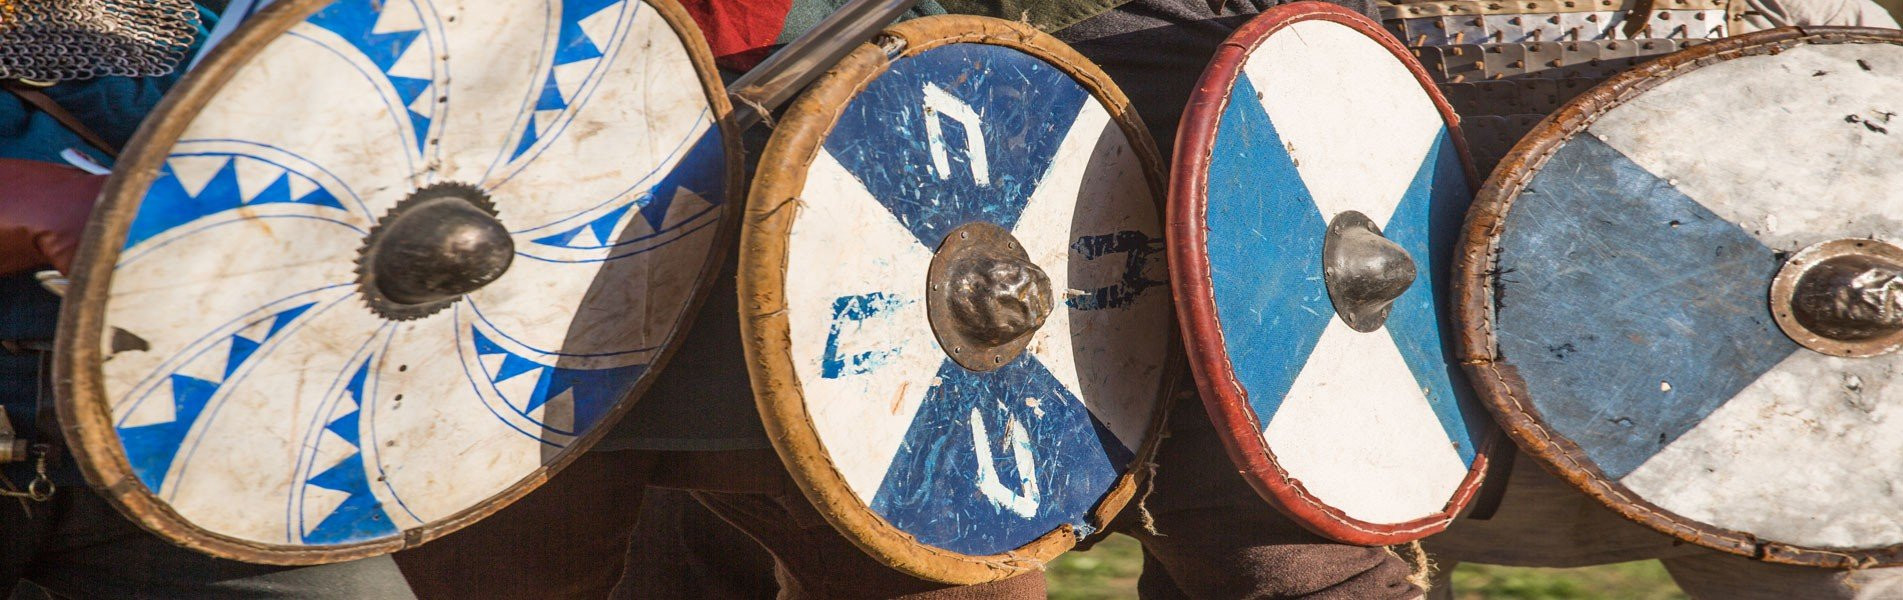 Escudos Vikingos en acción